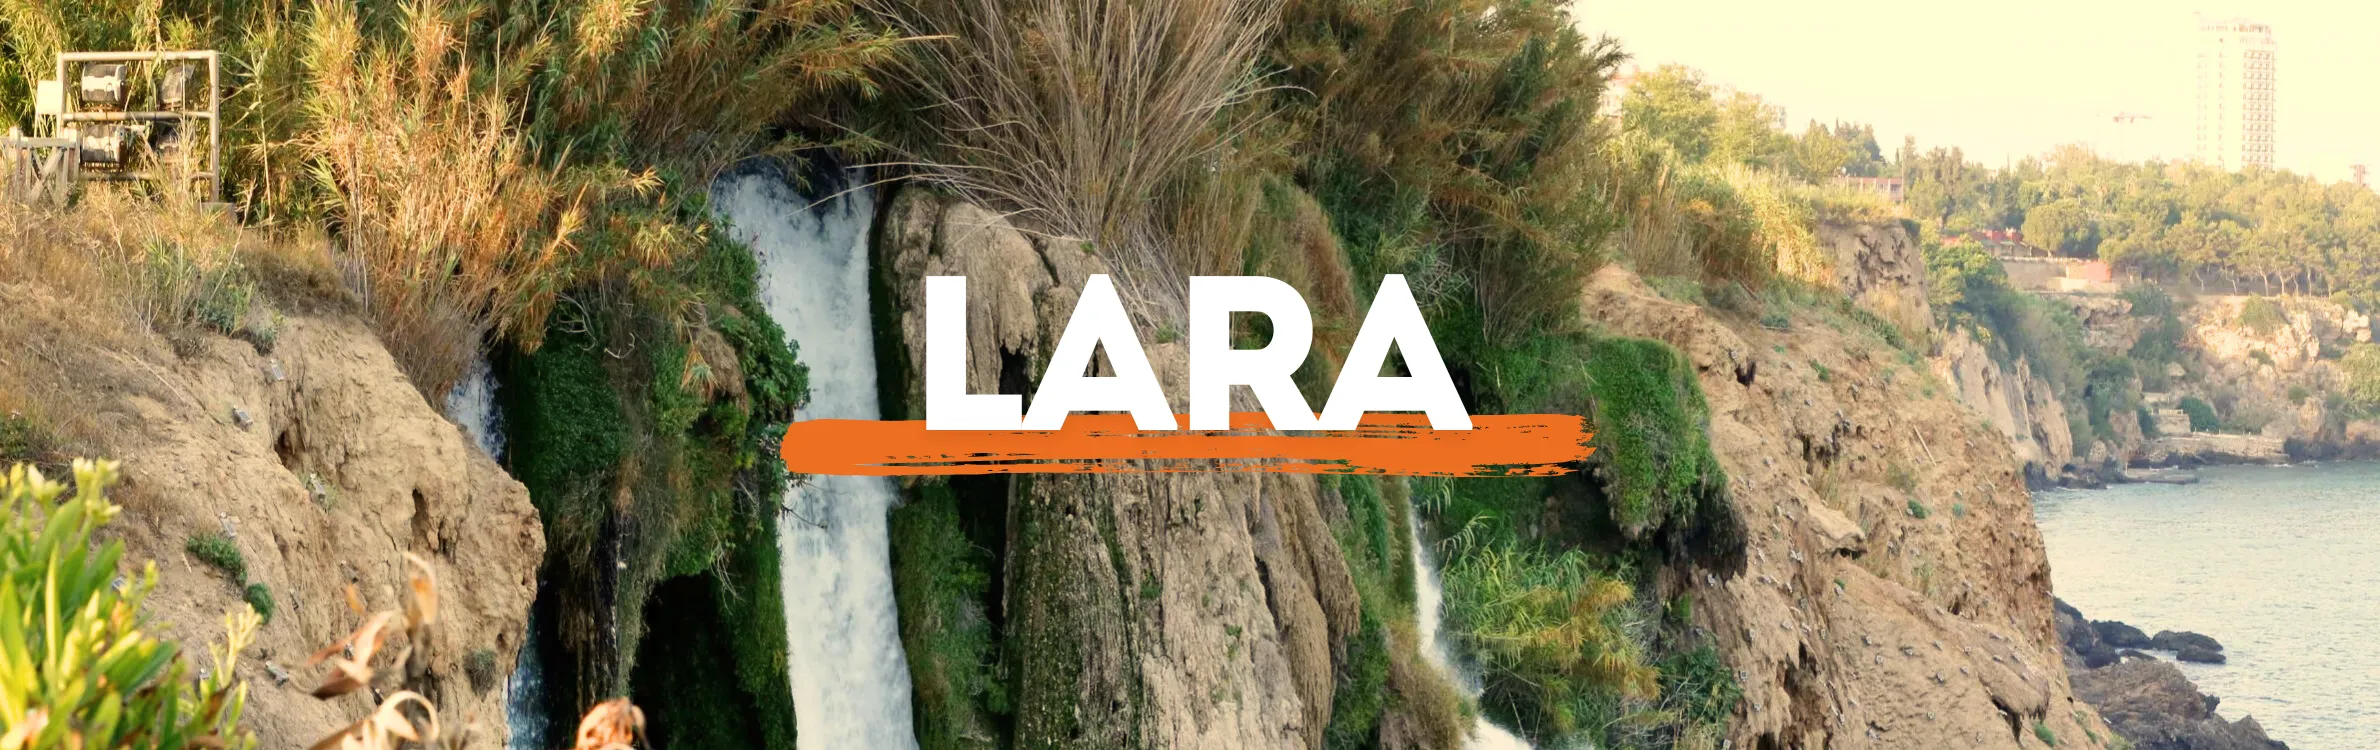 Lara-Last-Minute-Header